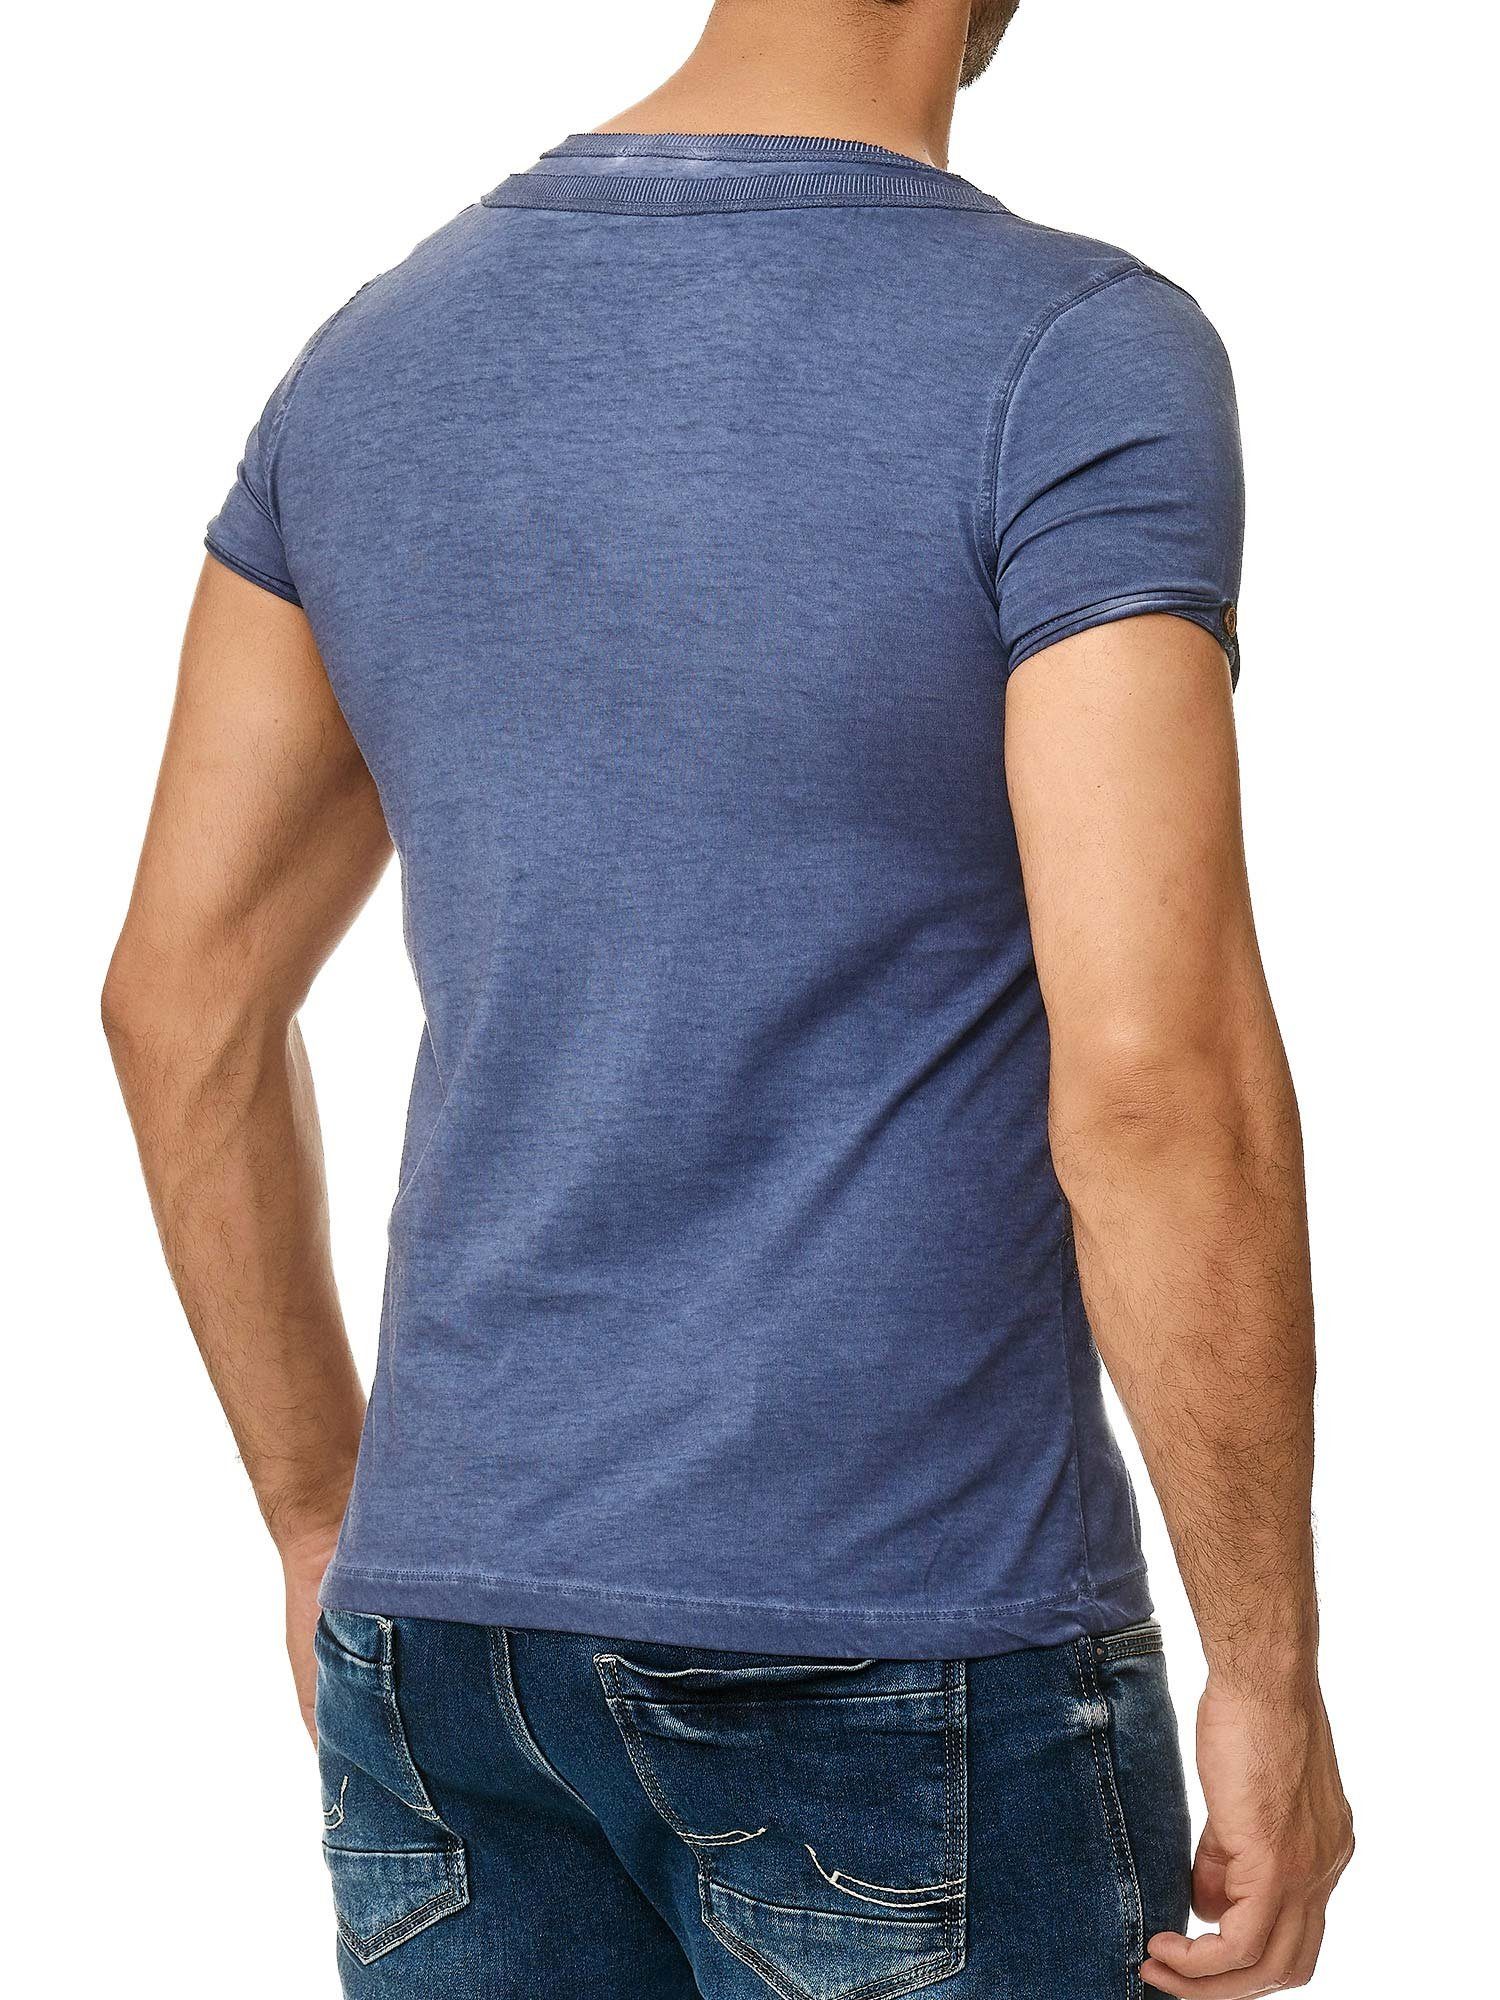 Tazzio T-Shirt 4022 in Ölwaschung Knopfleiste und der an trendiger stylischem Schulter mit navy Kragen